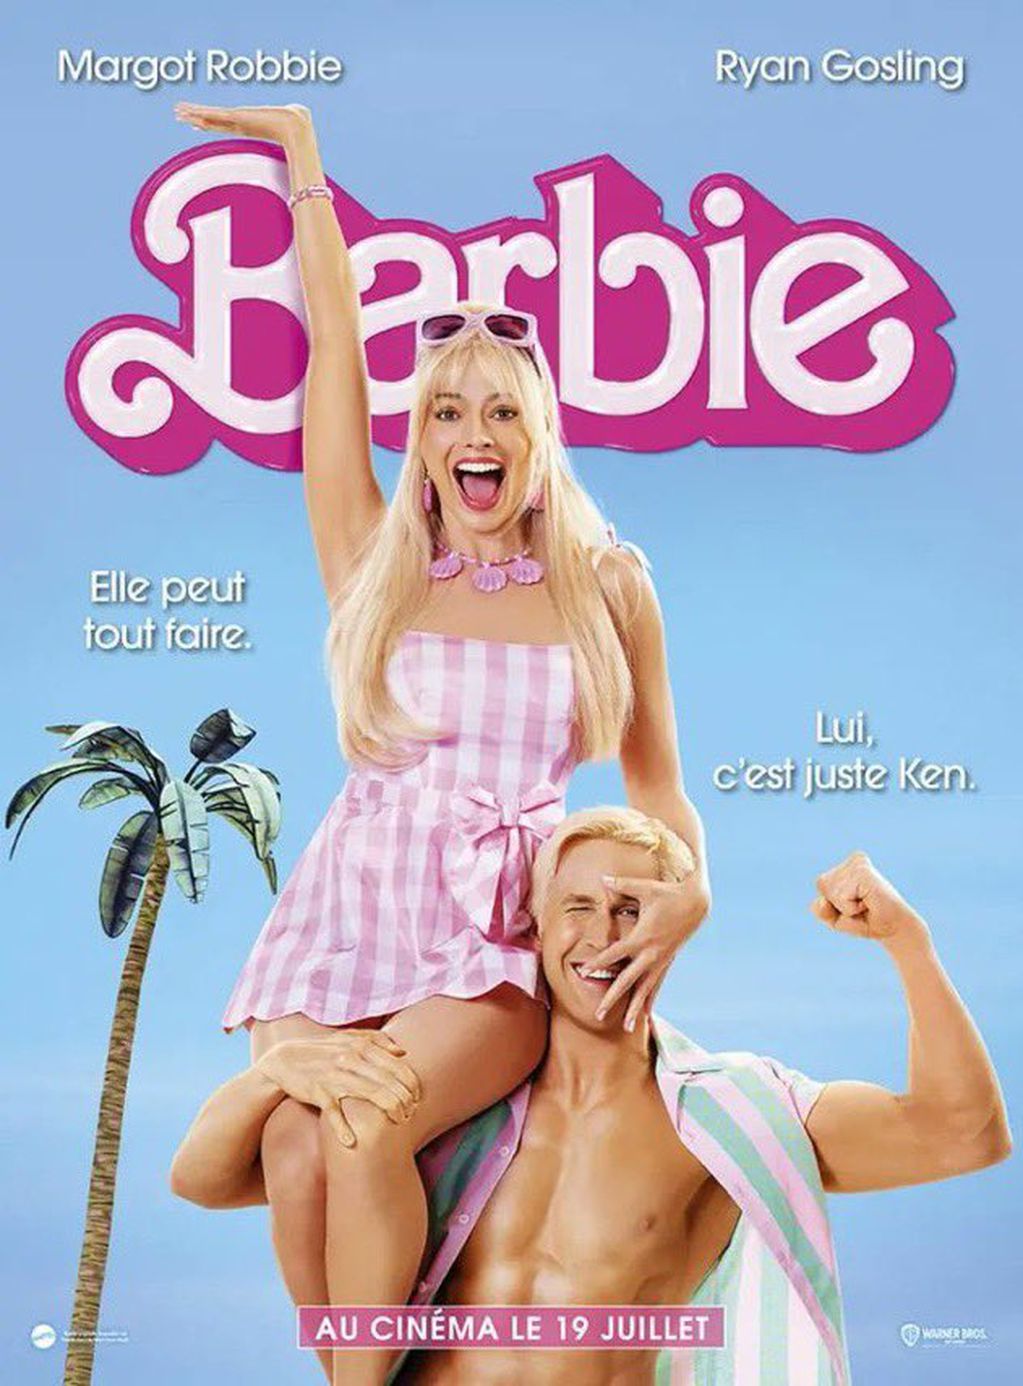 El póster francés de "Barbie".